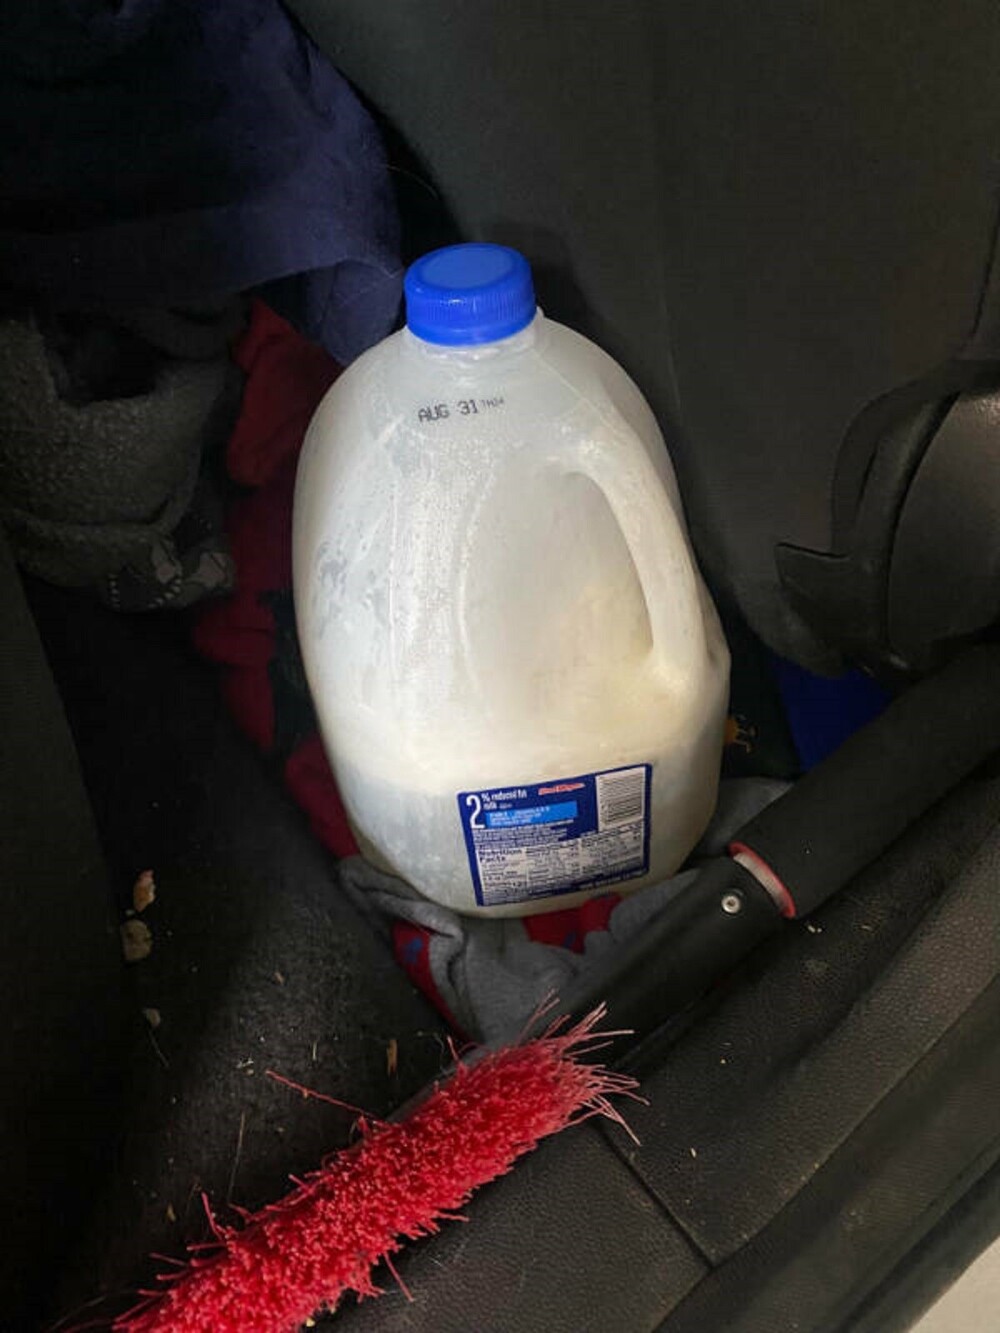 11. "Случайно оставил молоко в машине на неделю. Теперь в салоне пахнет сыром"